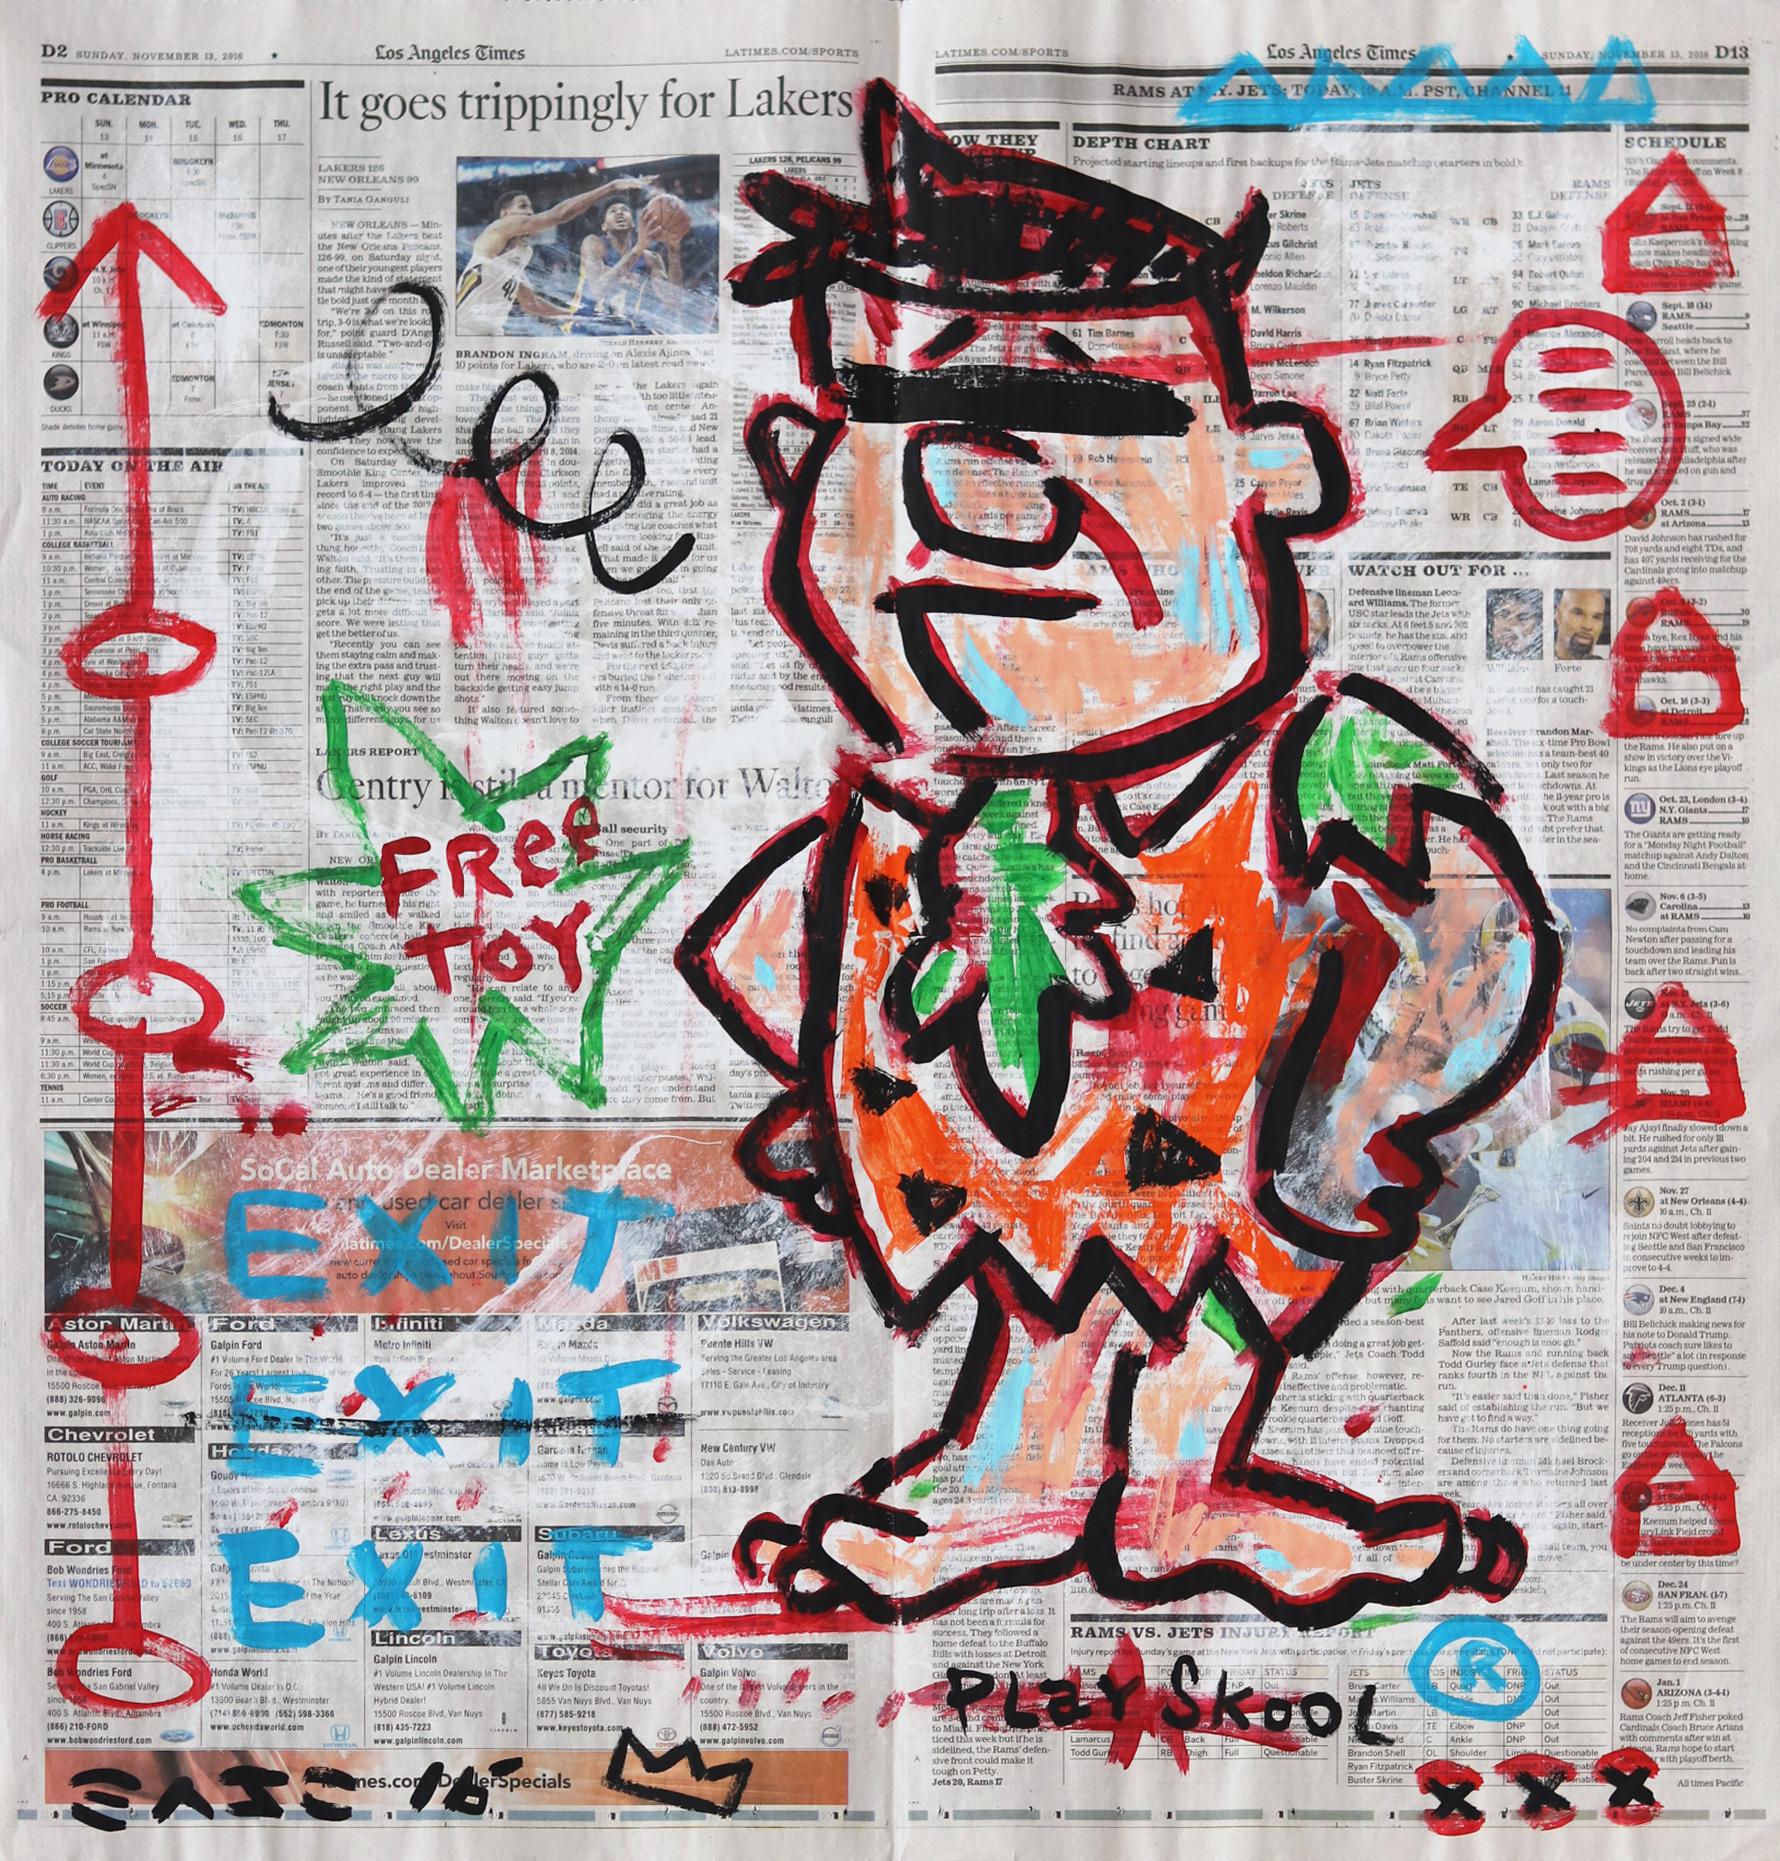 "Free Flintstone Toy" Zeitgenössisches Pop Art Original von Gary John